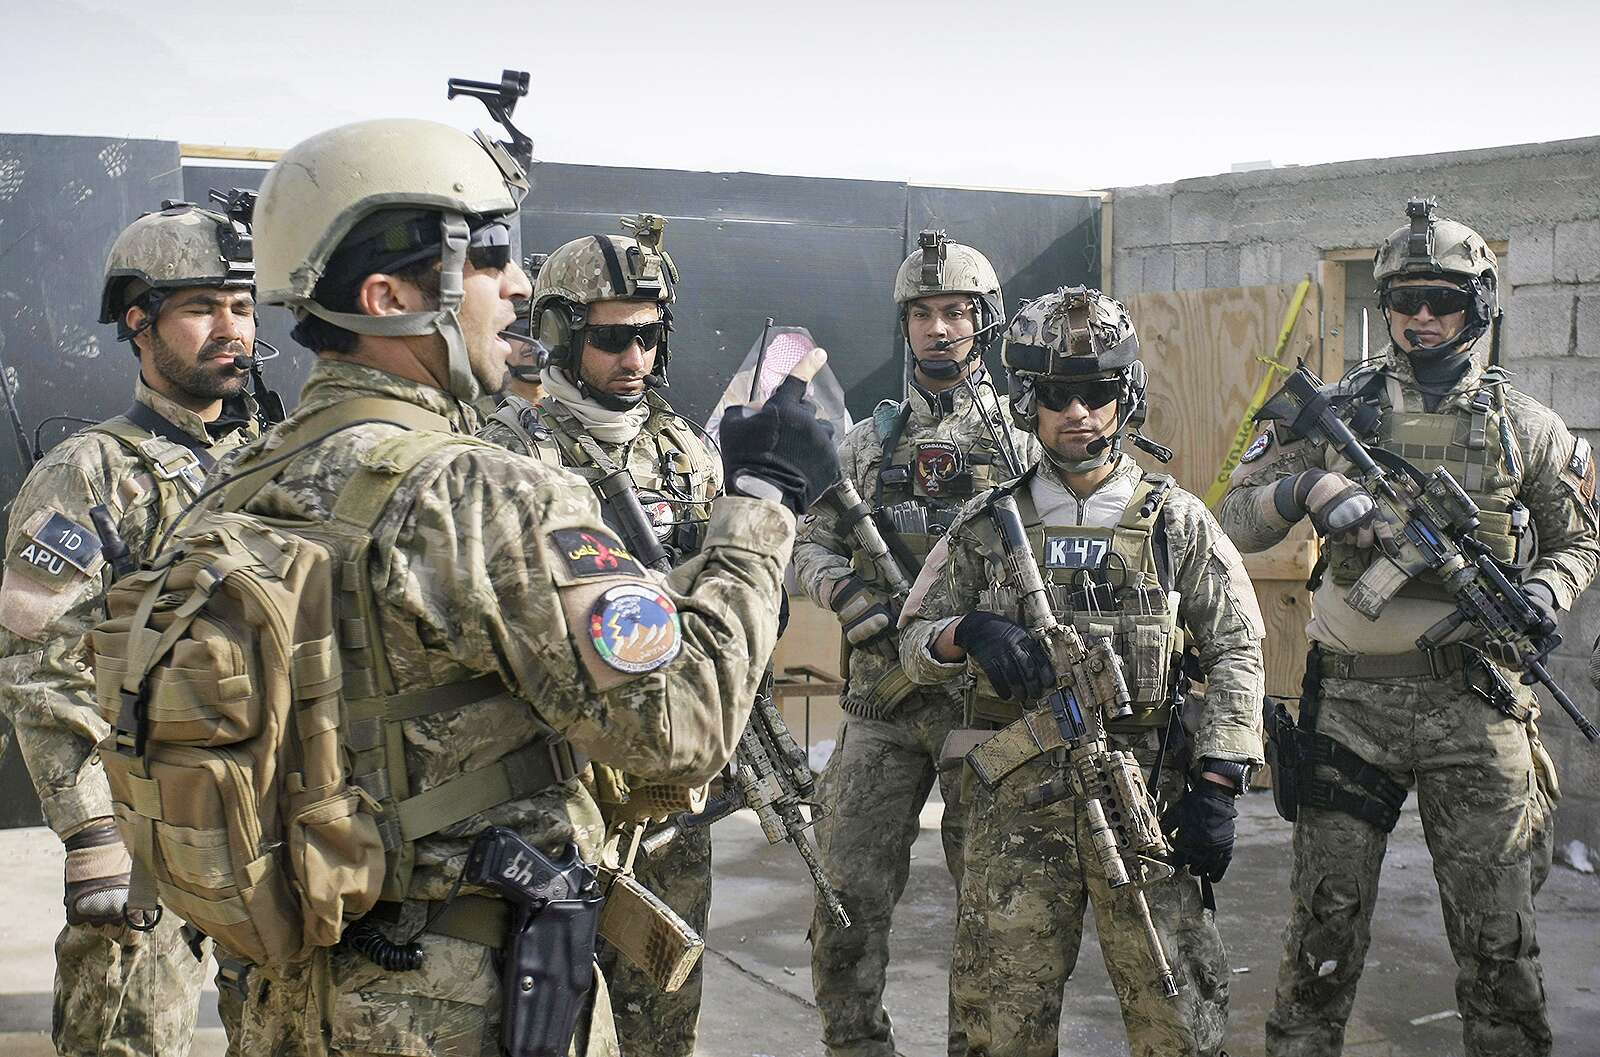 U.S. General Sees Afghan Troop Gains In Fight Against Taliban 38